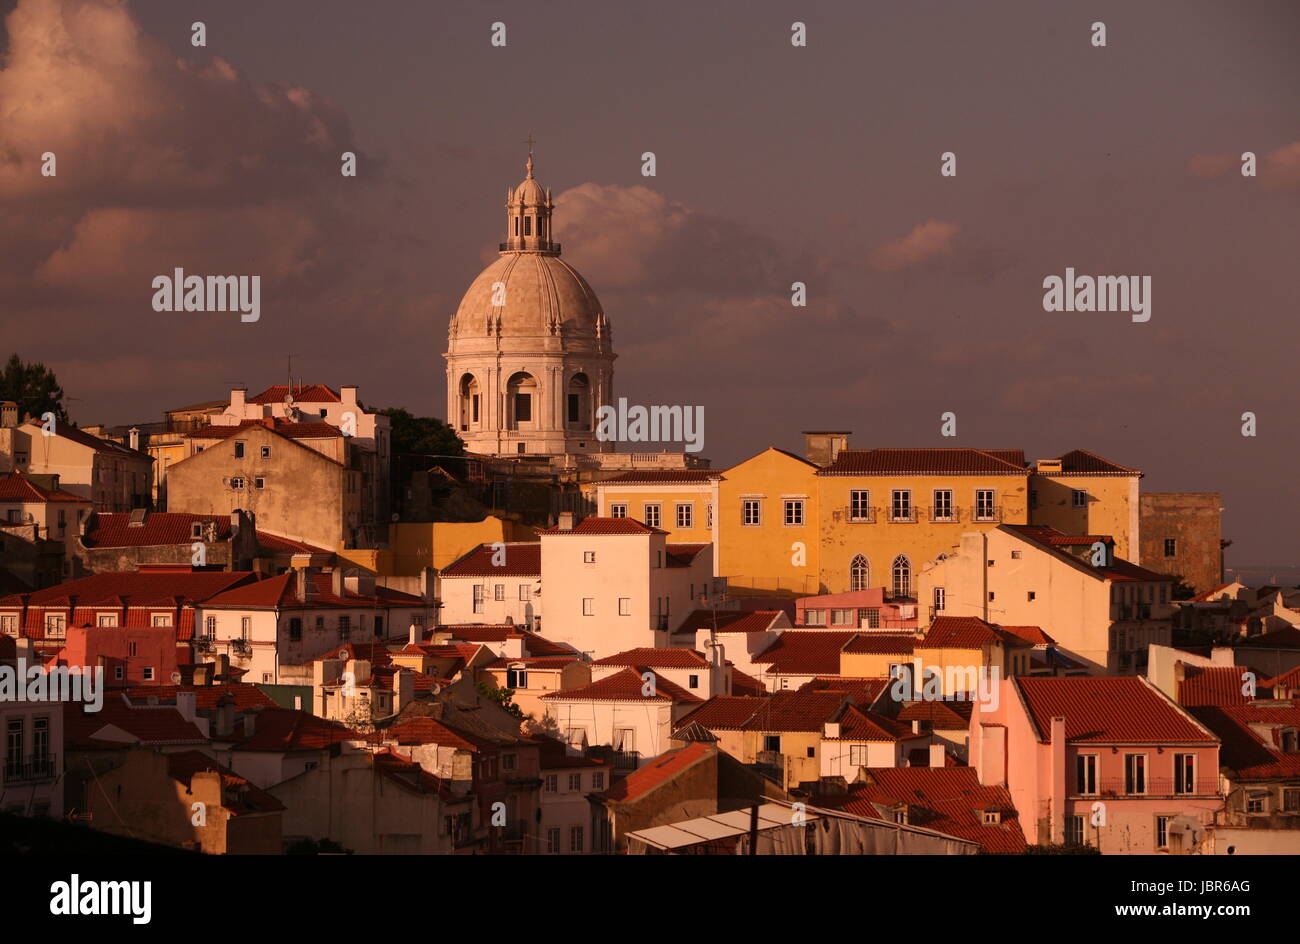 Die Uebersicht ueber die Altstadt von Alfama in der Innenstadt der Hauptstadt Lissabon in Portugal. Stock Photo